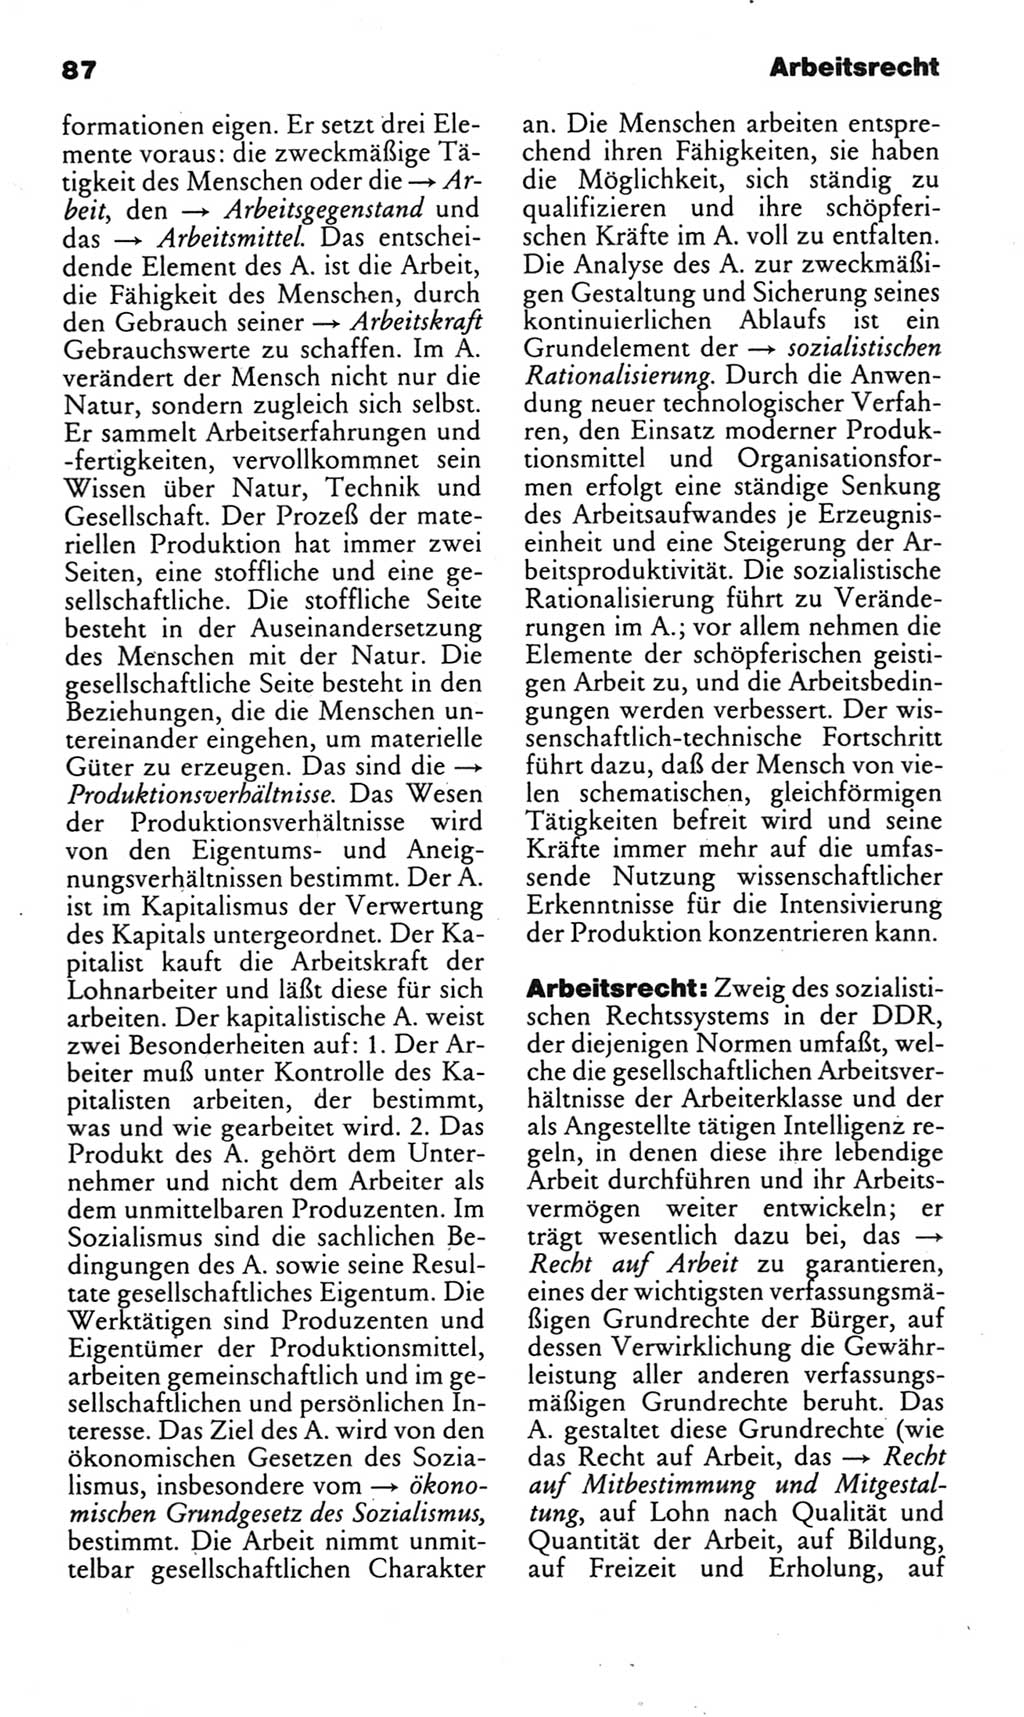 Kleines politisches Wörterbuch [Deutsche Demokratische Republik (DDR)] 1985, Seite 87 (Kl. pol. Wb. DDR 1985, S. 87)